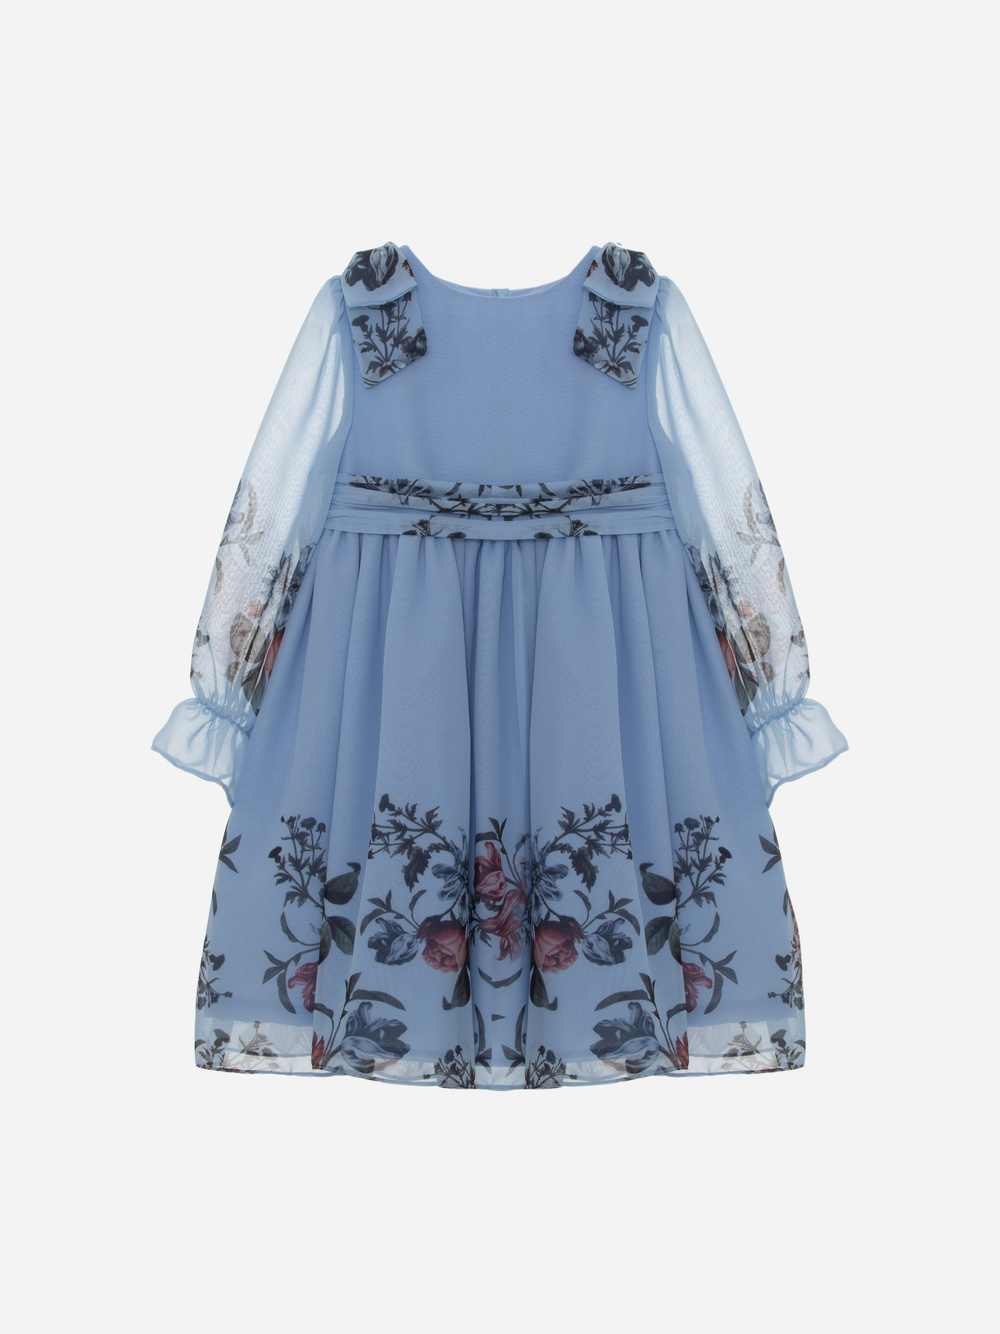 Printed Blue Chiffon Dress